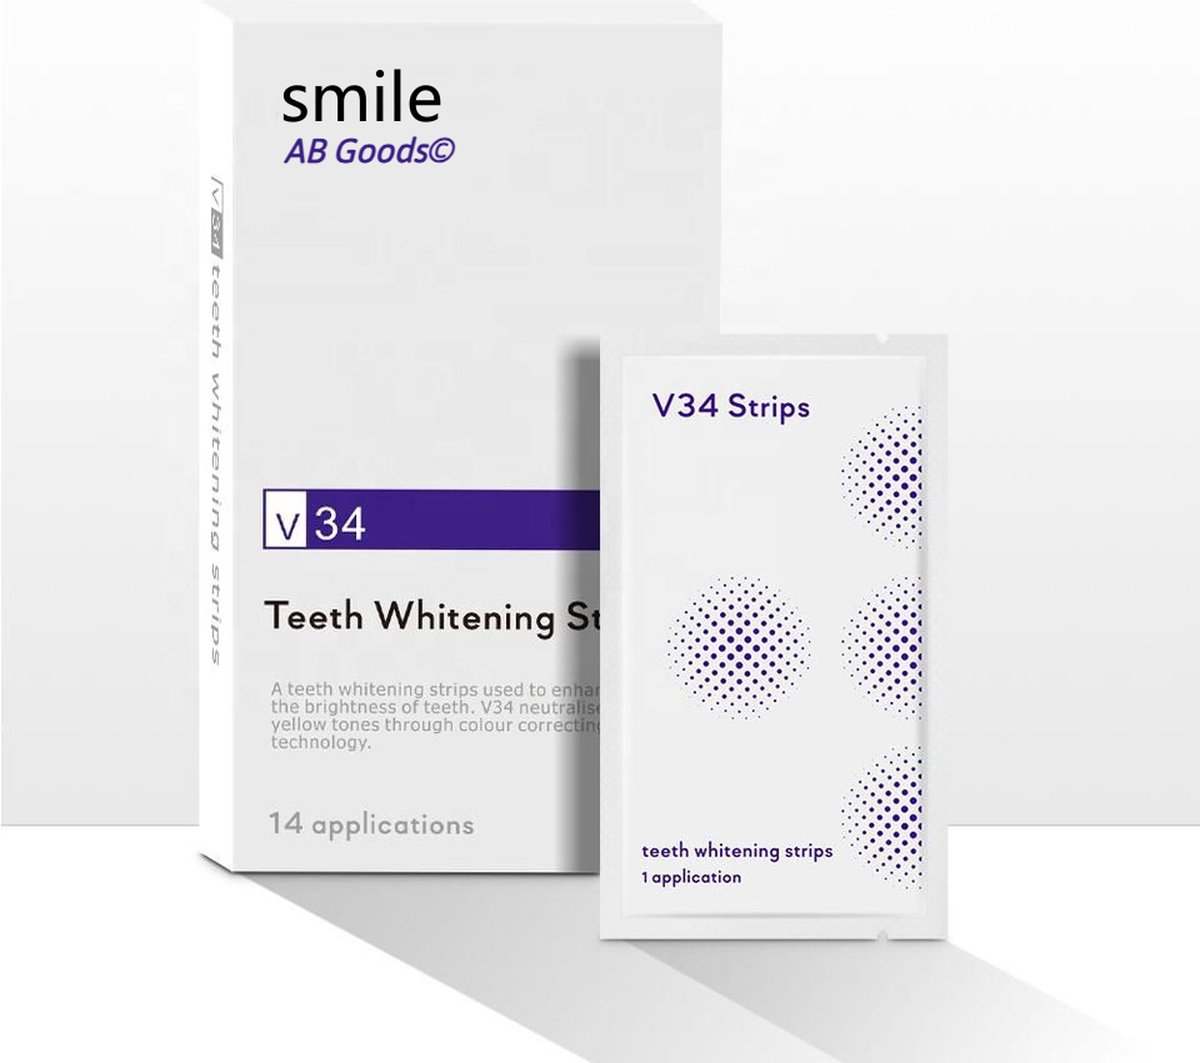 AB Goods© Tandenbleekset - Tanden bleken - Whitening strips - Tandenblekers - Tandenbleken - Tanden bleekstrips - Teeth whitening strips - Tandenbleek set